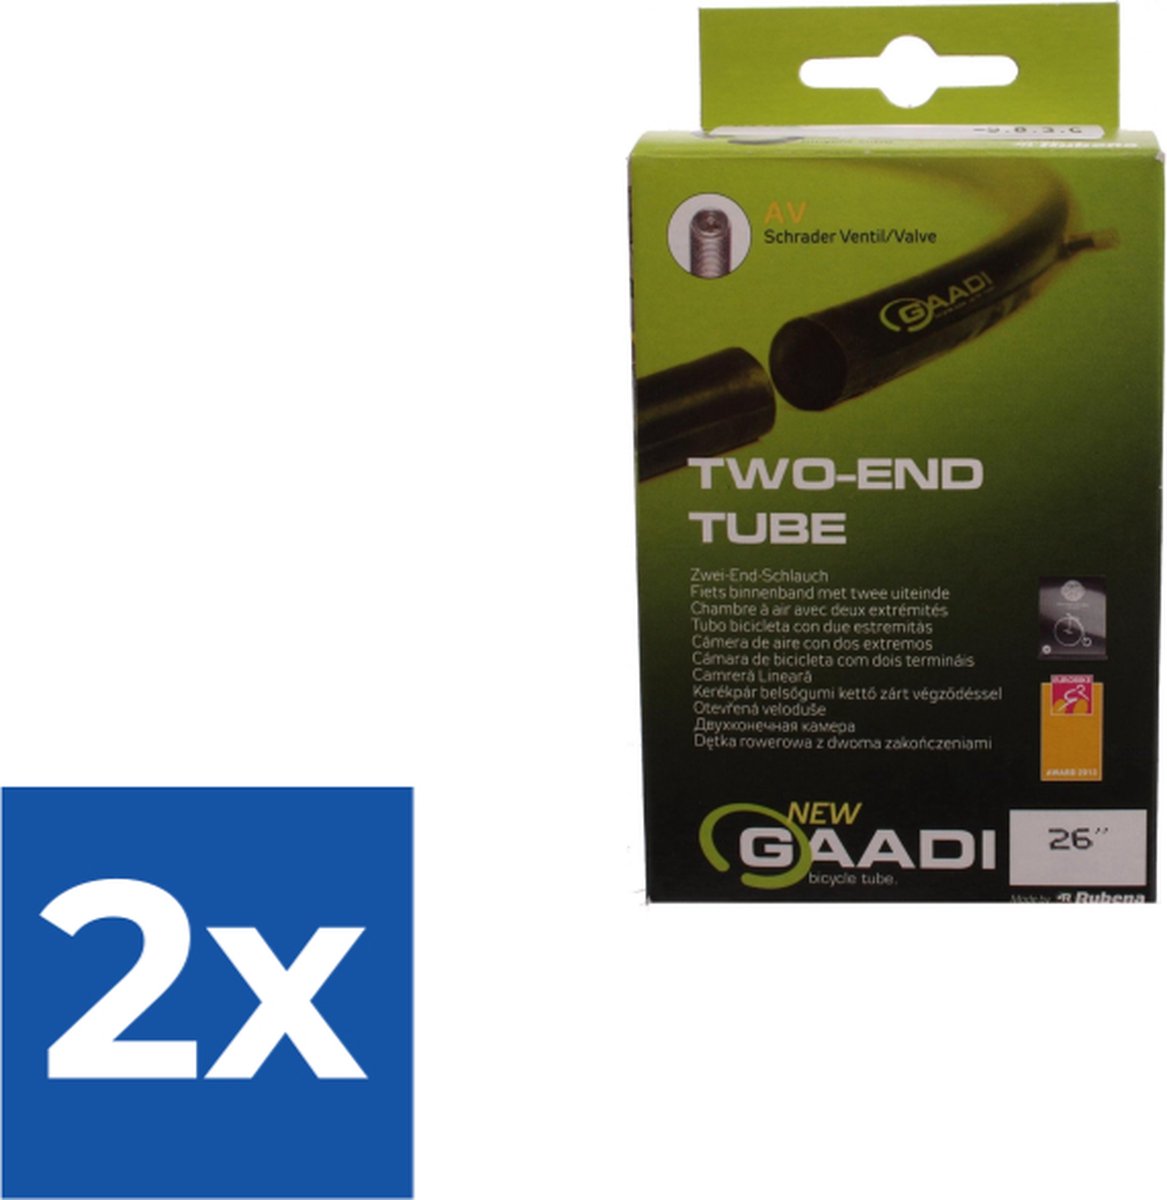 Gaadi Binnenband 26 X 1.90/2.125 (50/54-559) Av 40mm - Voordeelverpakking 2 stuks